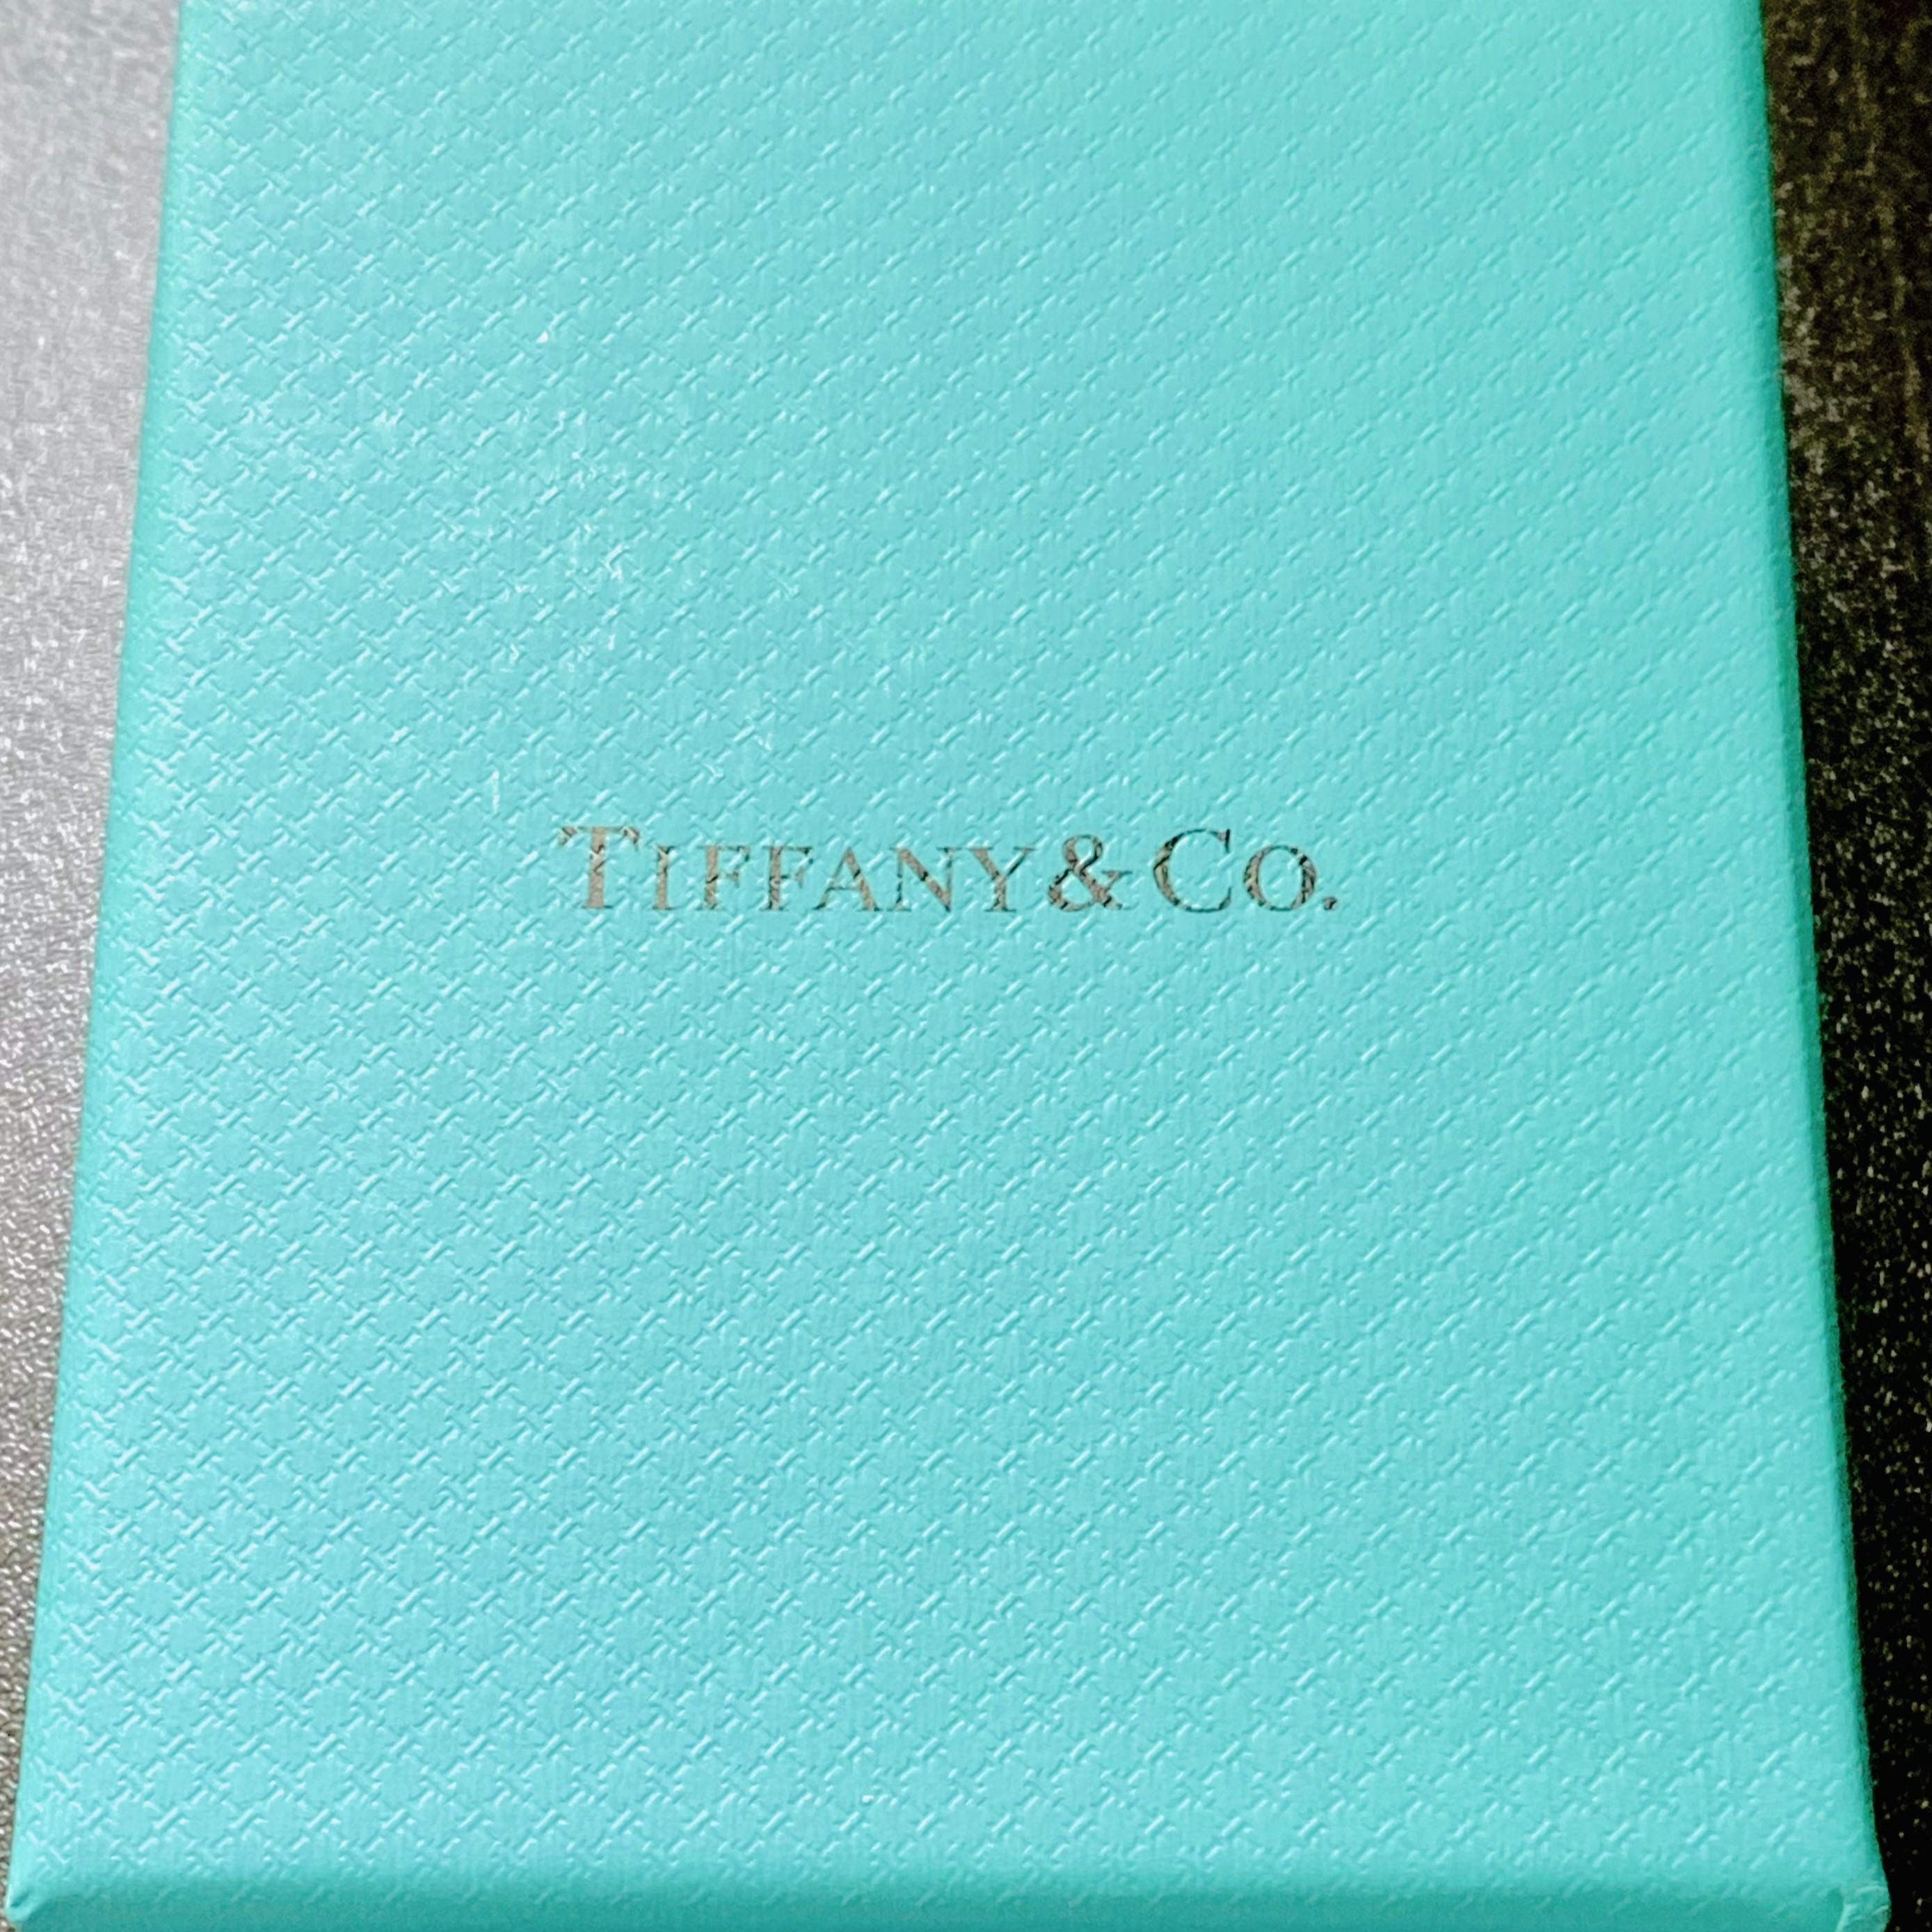 Vintage Tiffany & Co. Bracelet manchette en argent sterling - Timeless Elegance
Entrez dans l'allure de l'élégance intemporelle avec cette rare pièce vintage de Tiffany & Co. Bracelet en argent sterling. Fabriquée avec précision et portant le